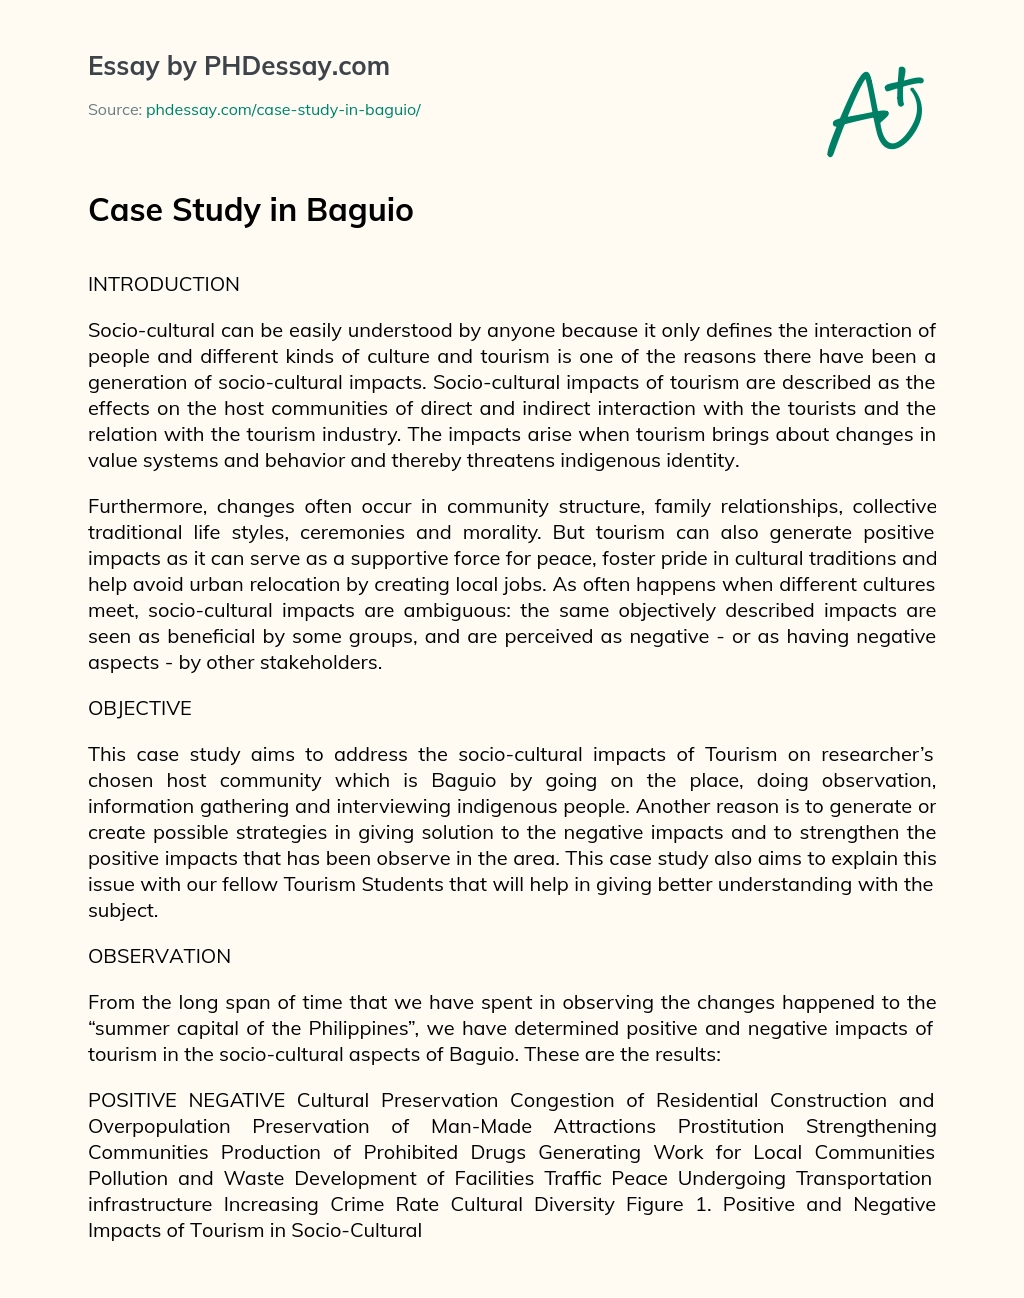 Case Study in Baguio essay